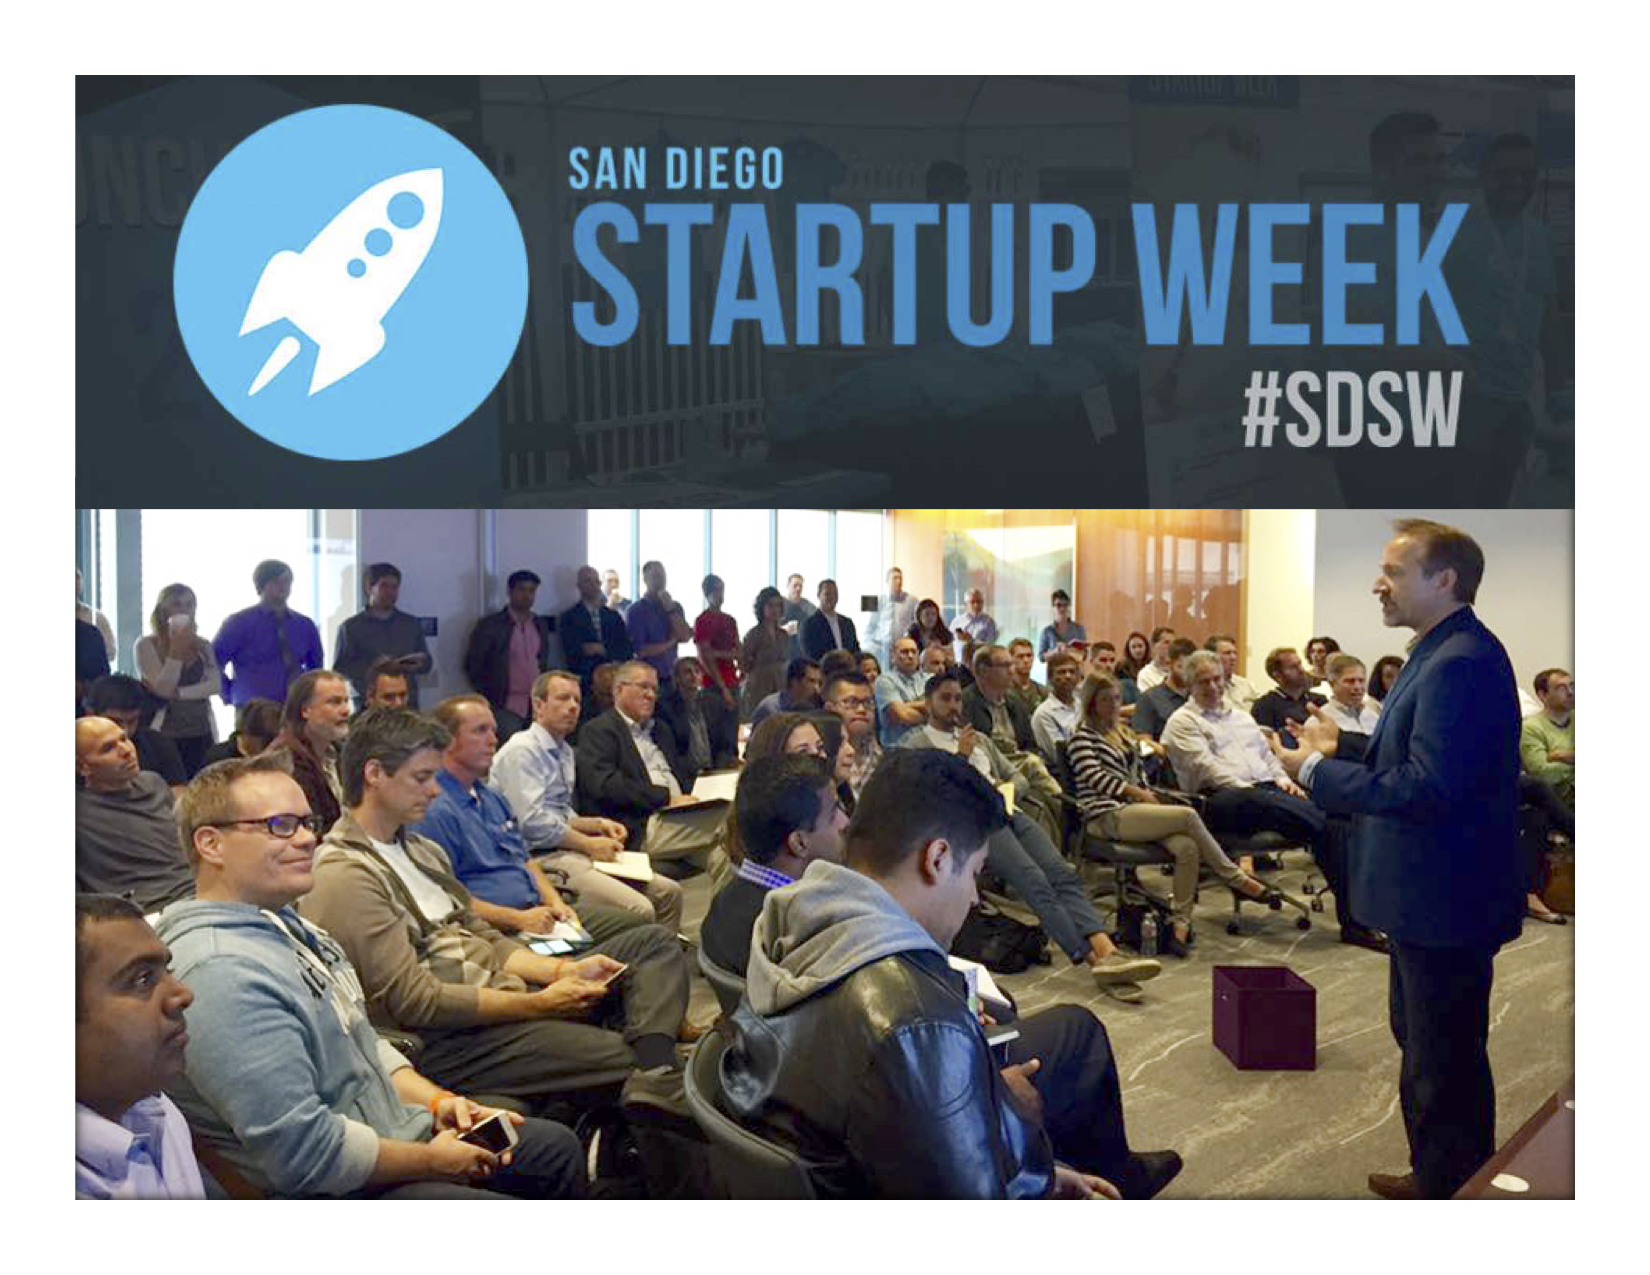 San Diego Startup Week #SDSW